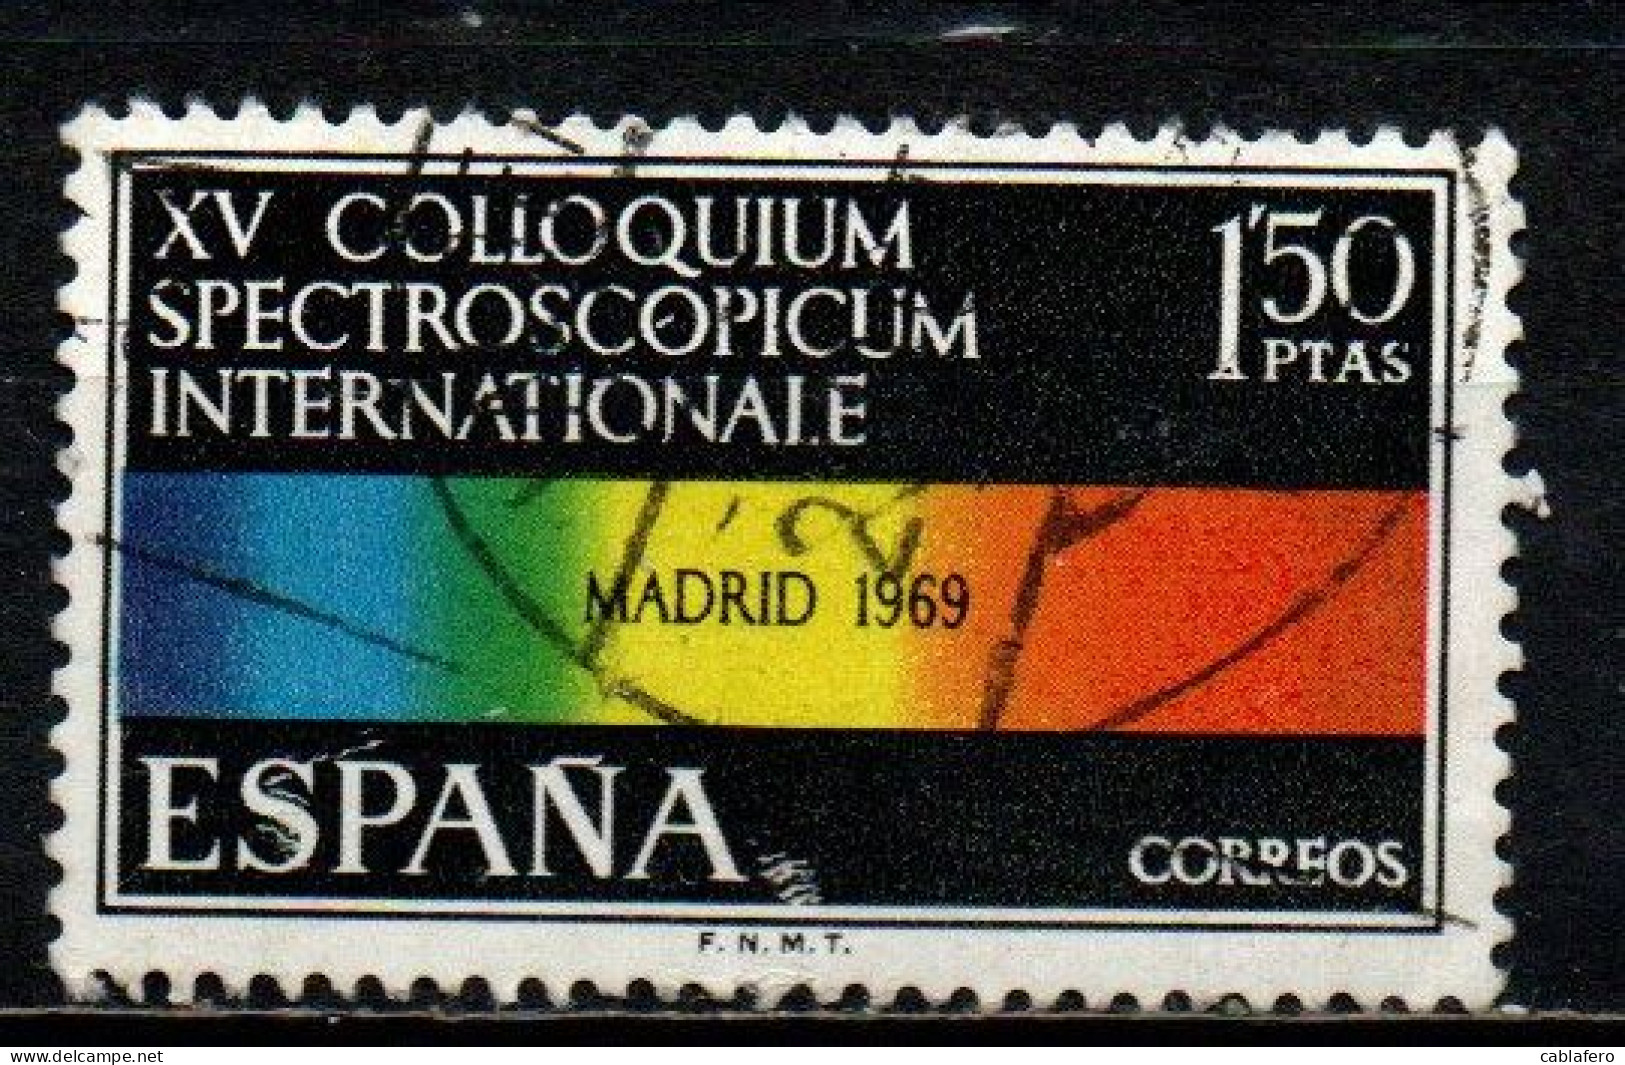 SPAGNA - 1969 - CONGRESSO SPETTROSCOPICO INTERNAZIONALE A MADRID - USATO - Used Stamps